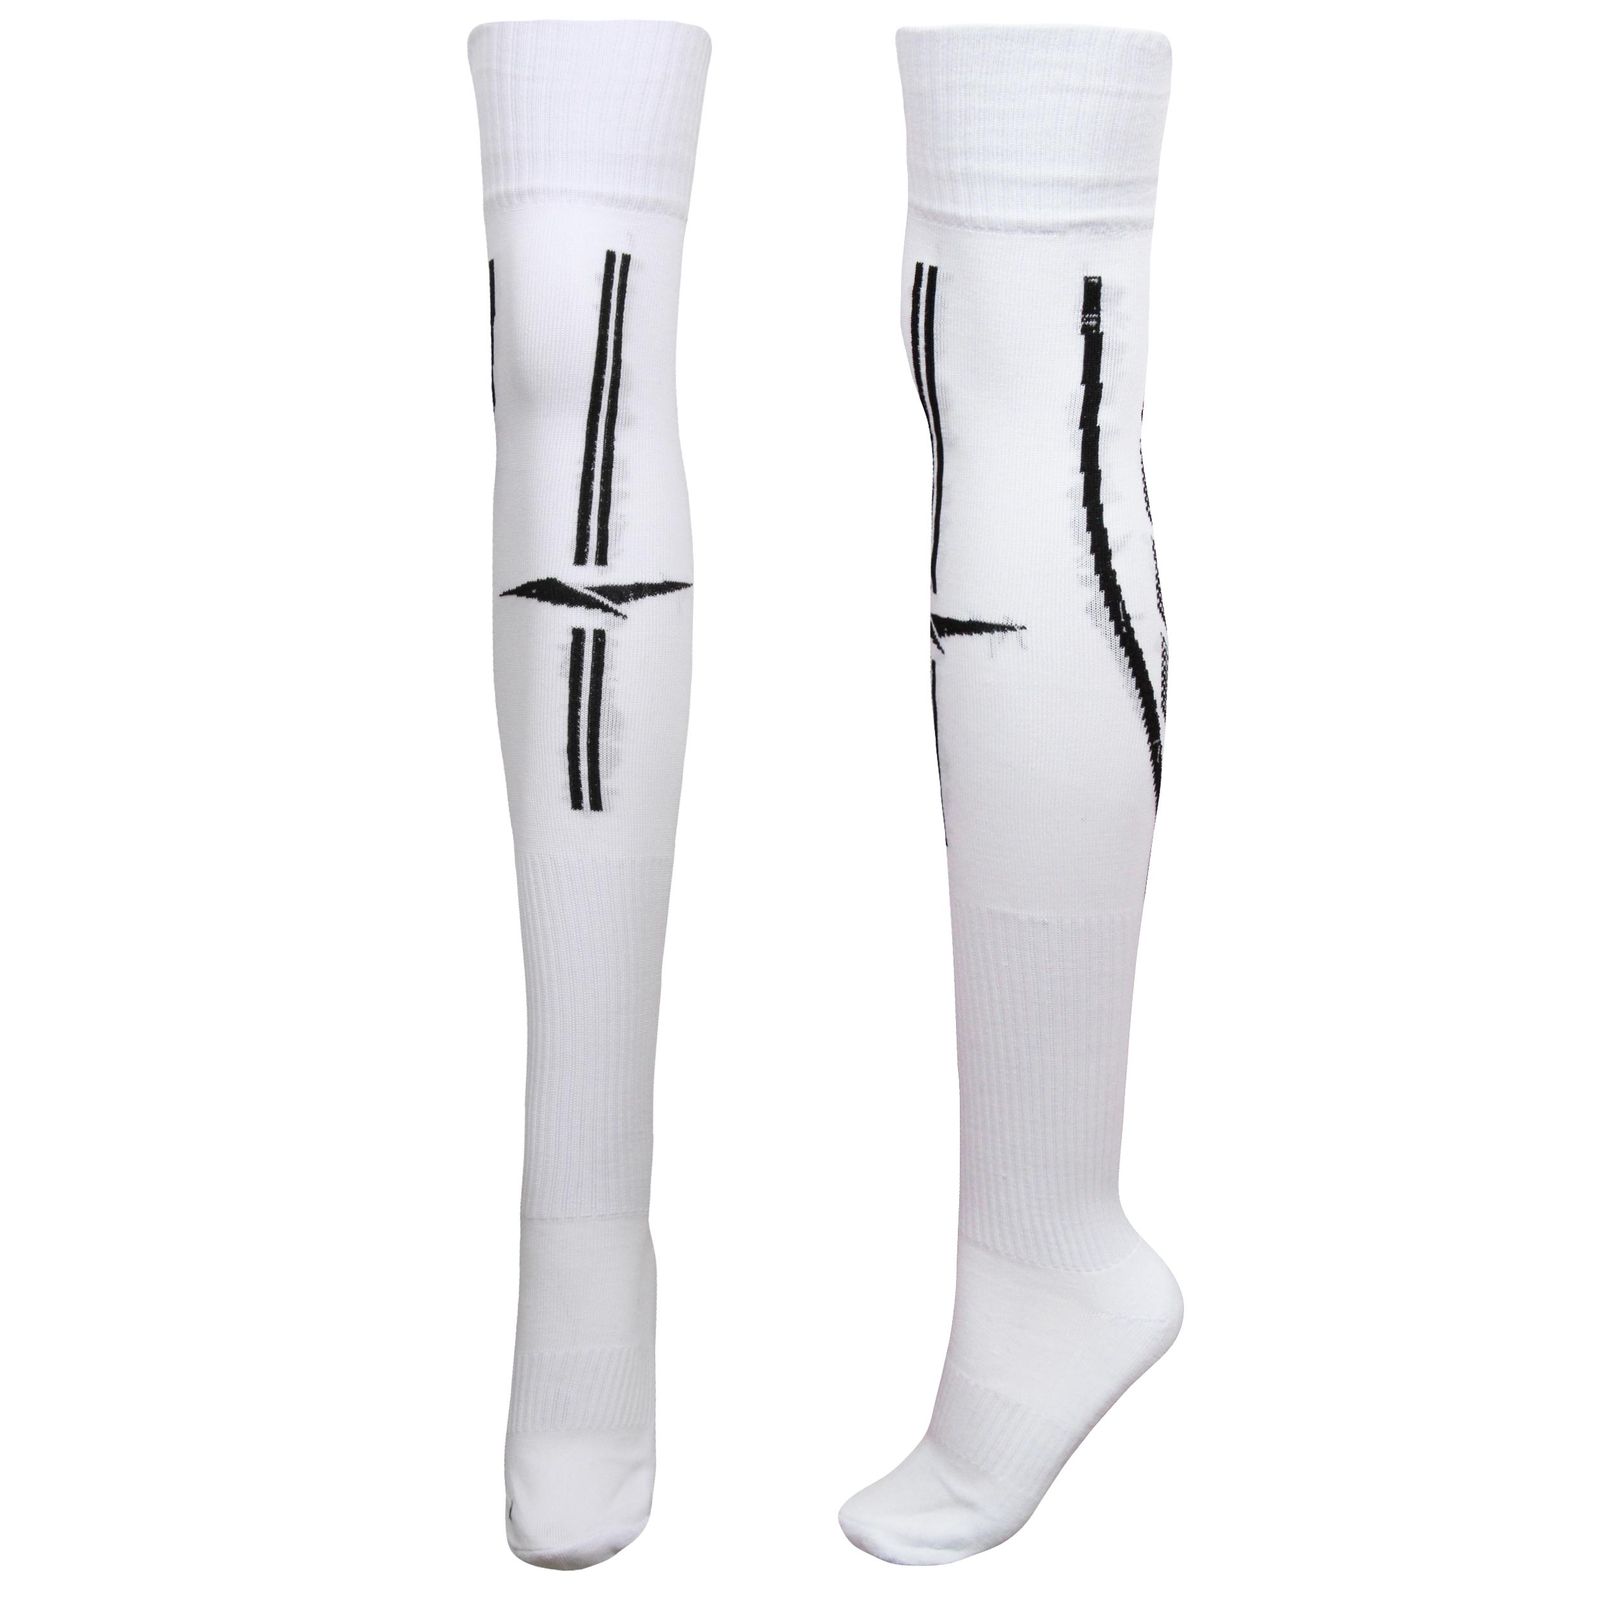 جوراب ورزشی ساق بلند مردانه ماییلدا مدل کف حوله ای کد 4187 رنگ سفید -  - 2